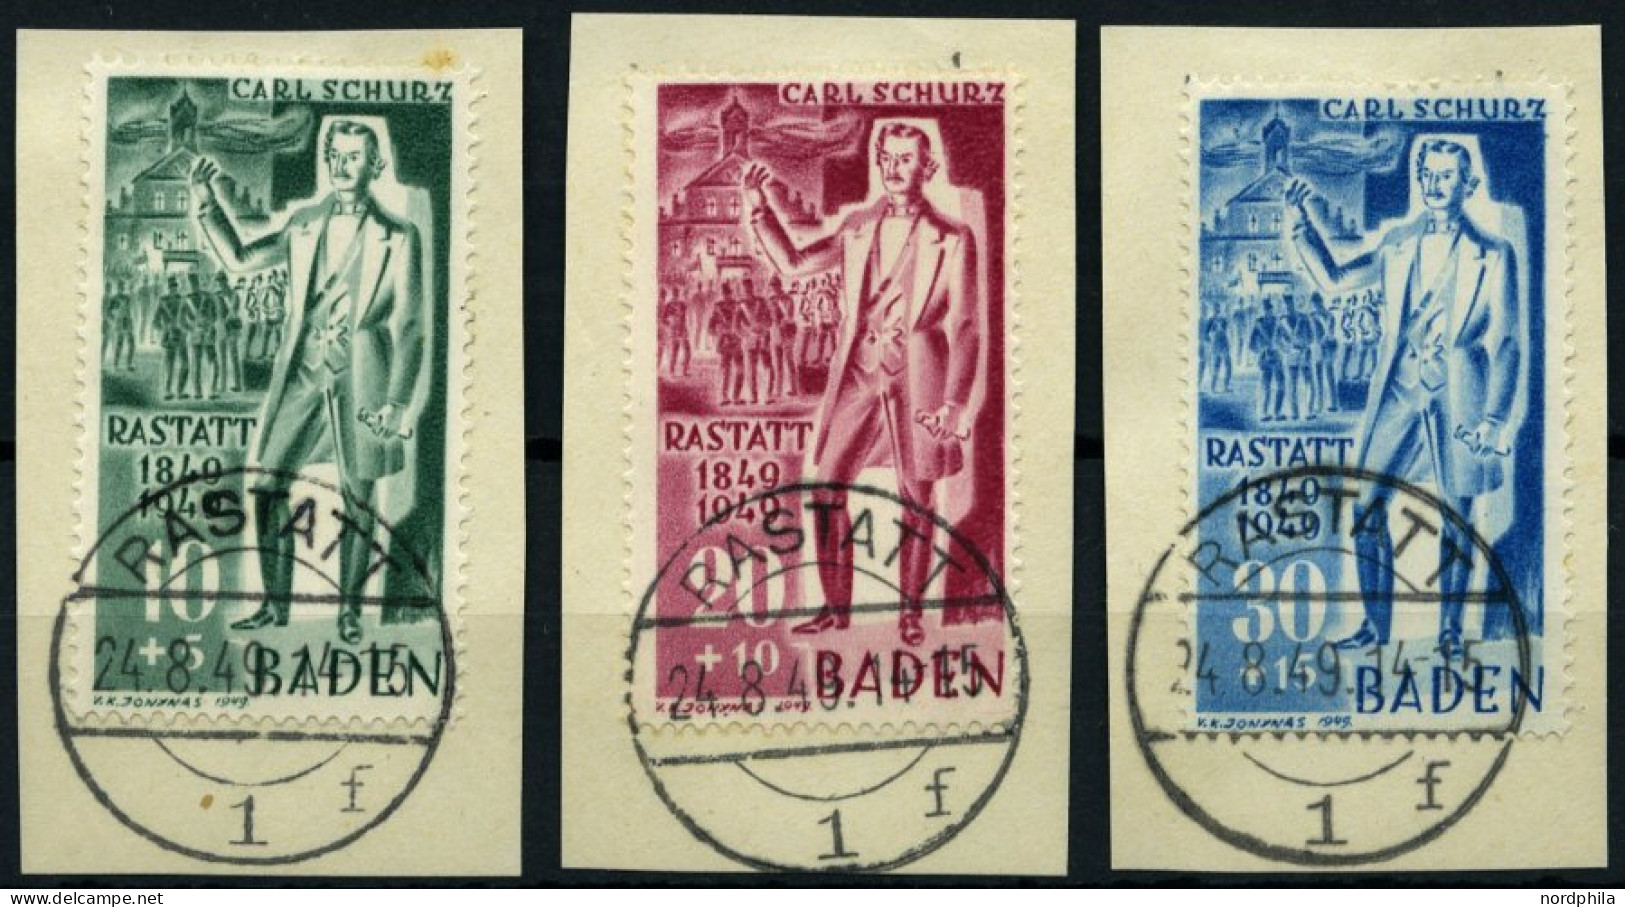 BADEN 50-52 BrfStk, 1949, Schurz Auf Briefstücken Mit Ersttagsstempeln, Prachtsatz, Gepr. Schlegel, Mi. (110.-) - Bade